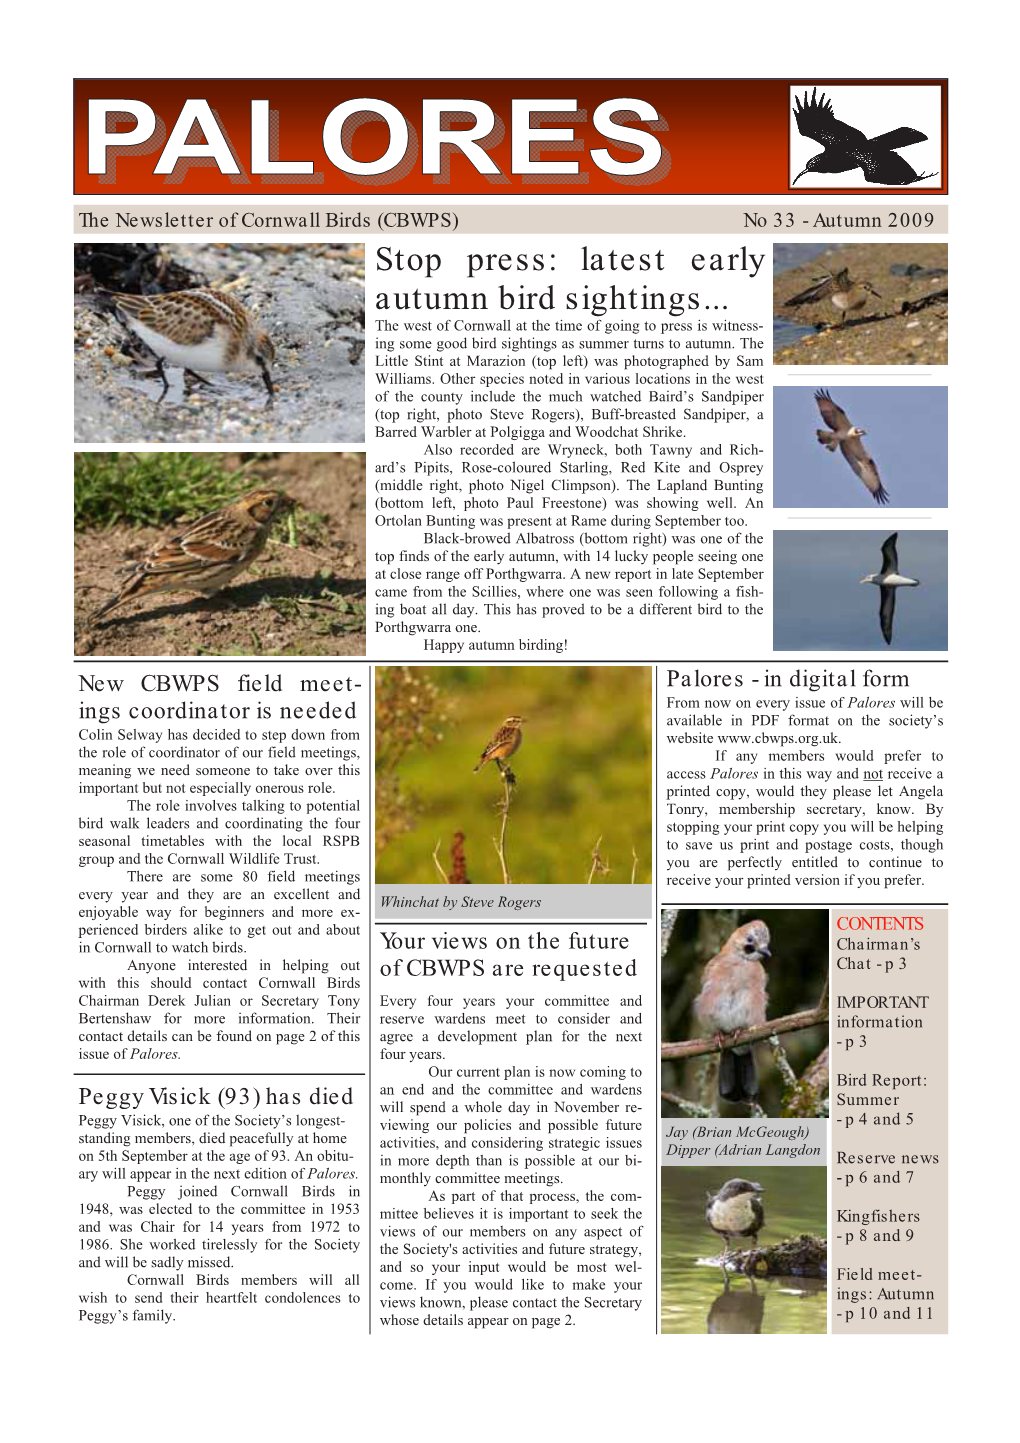 Stop Press: Latest Early Autumn Bird Sightings